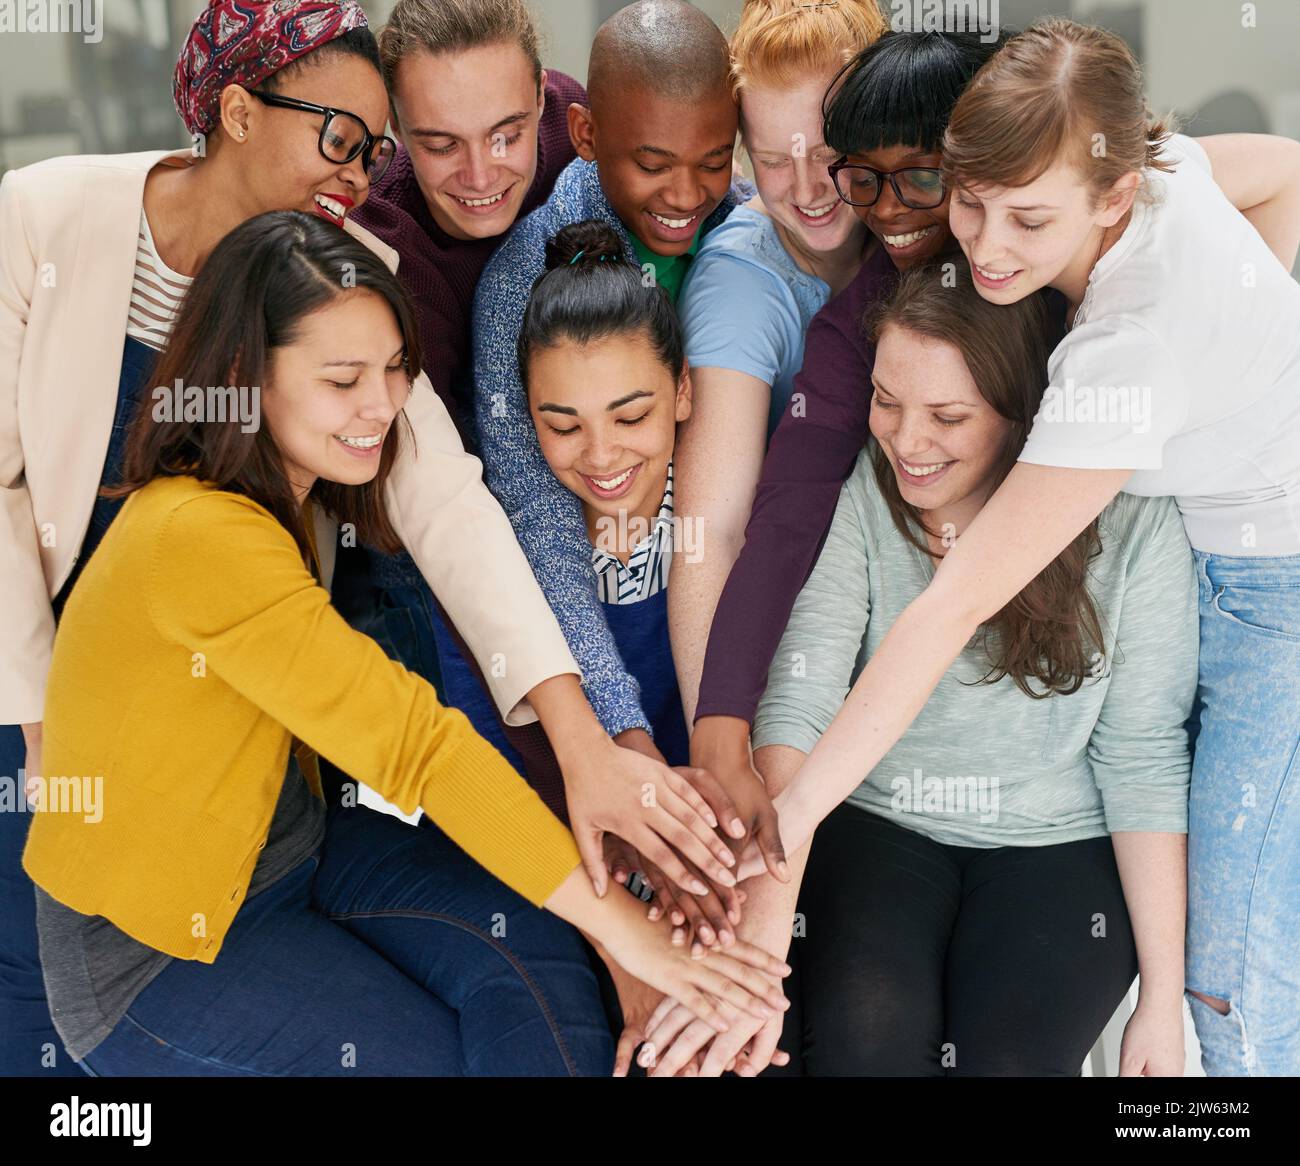 Alle Hände an Deck. Eine Gruppe von Menschen, die ihre Hände zusammenlegen. Stockfoto